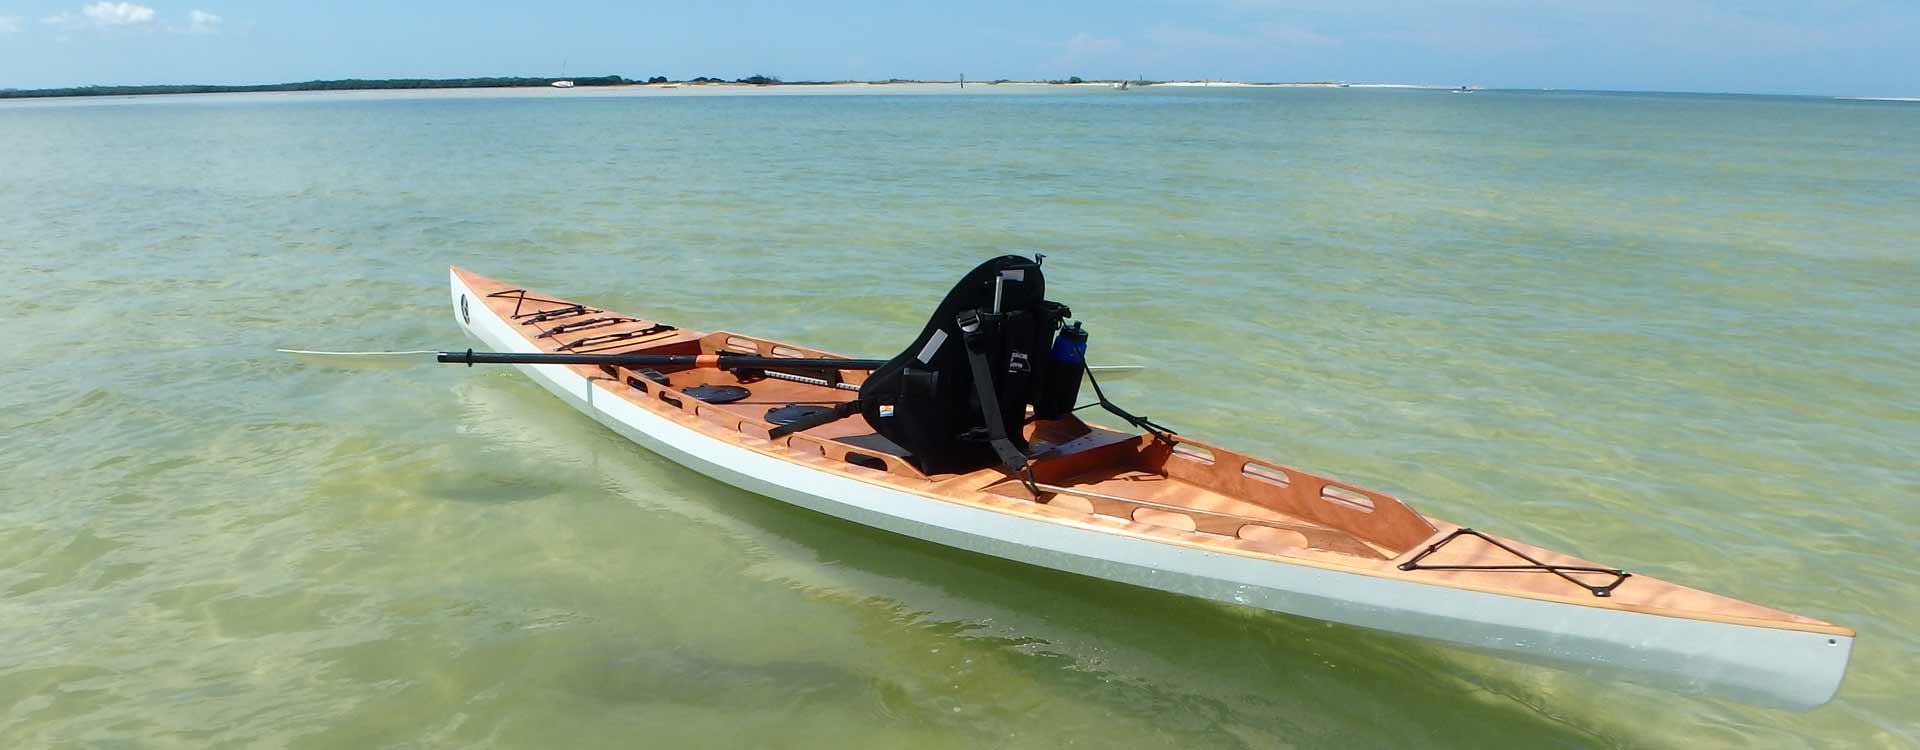 f1430 sit on top kayak bedard yacht design